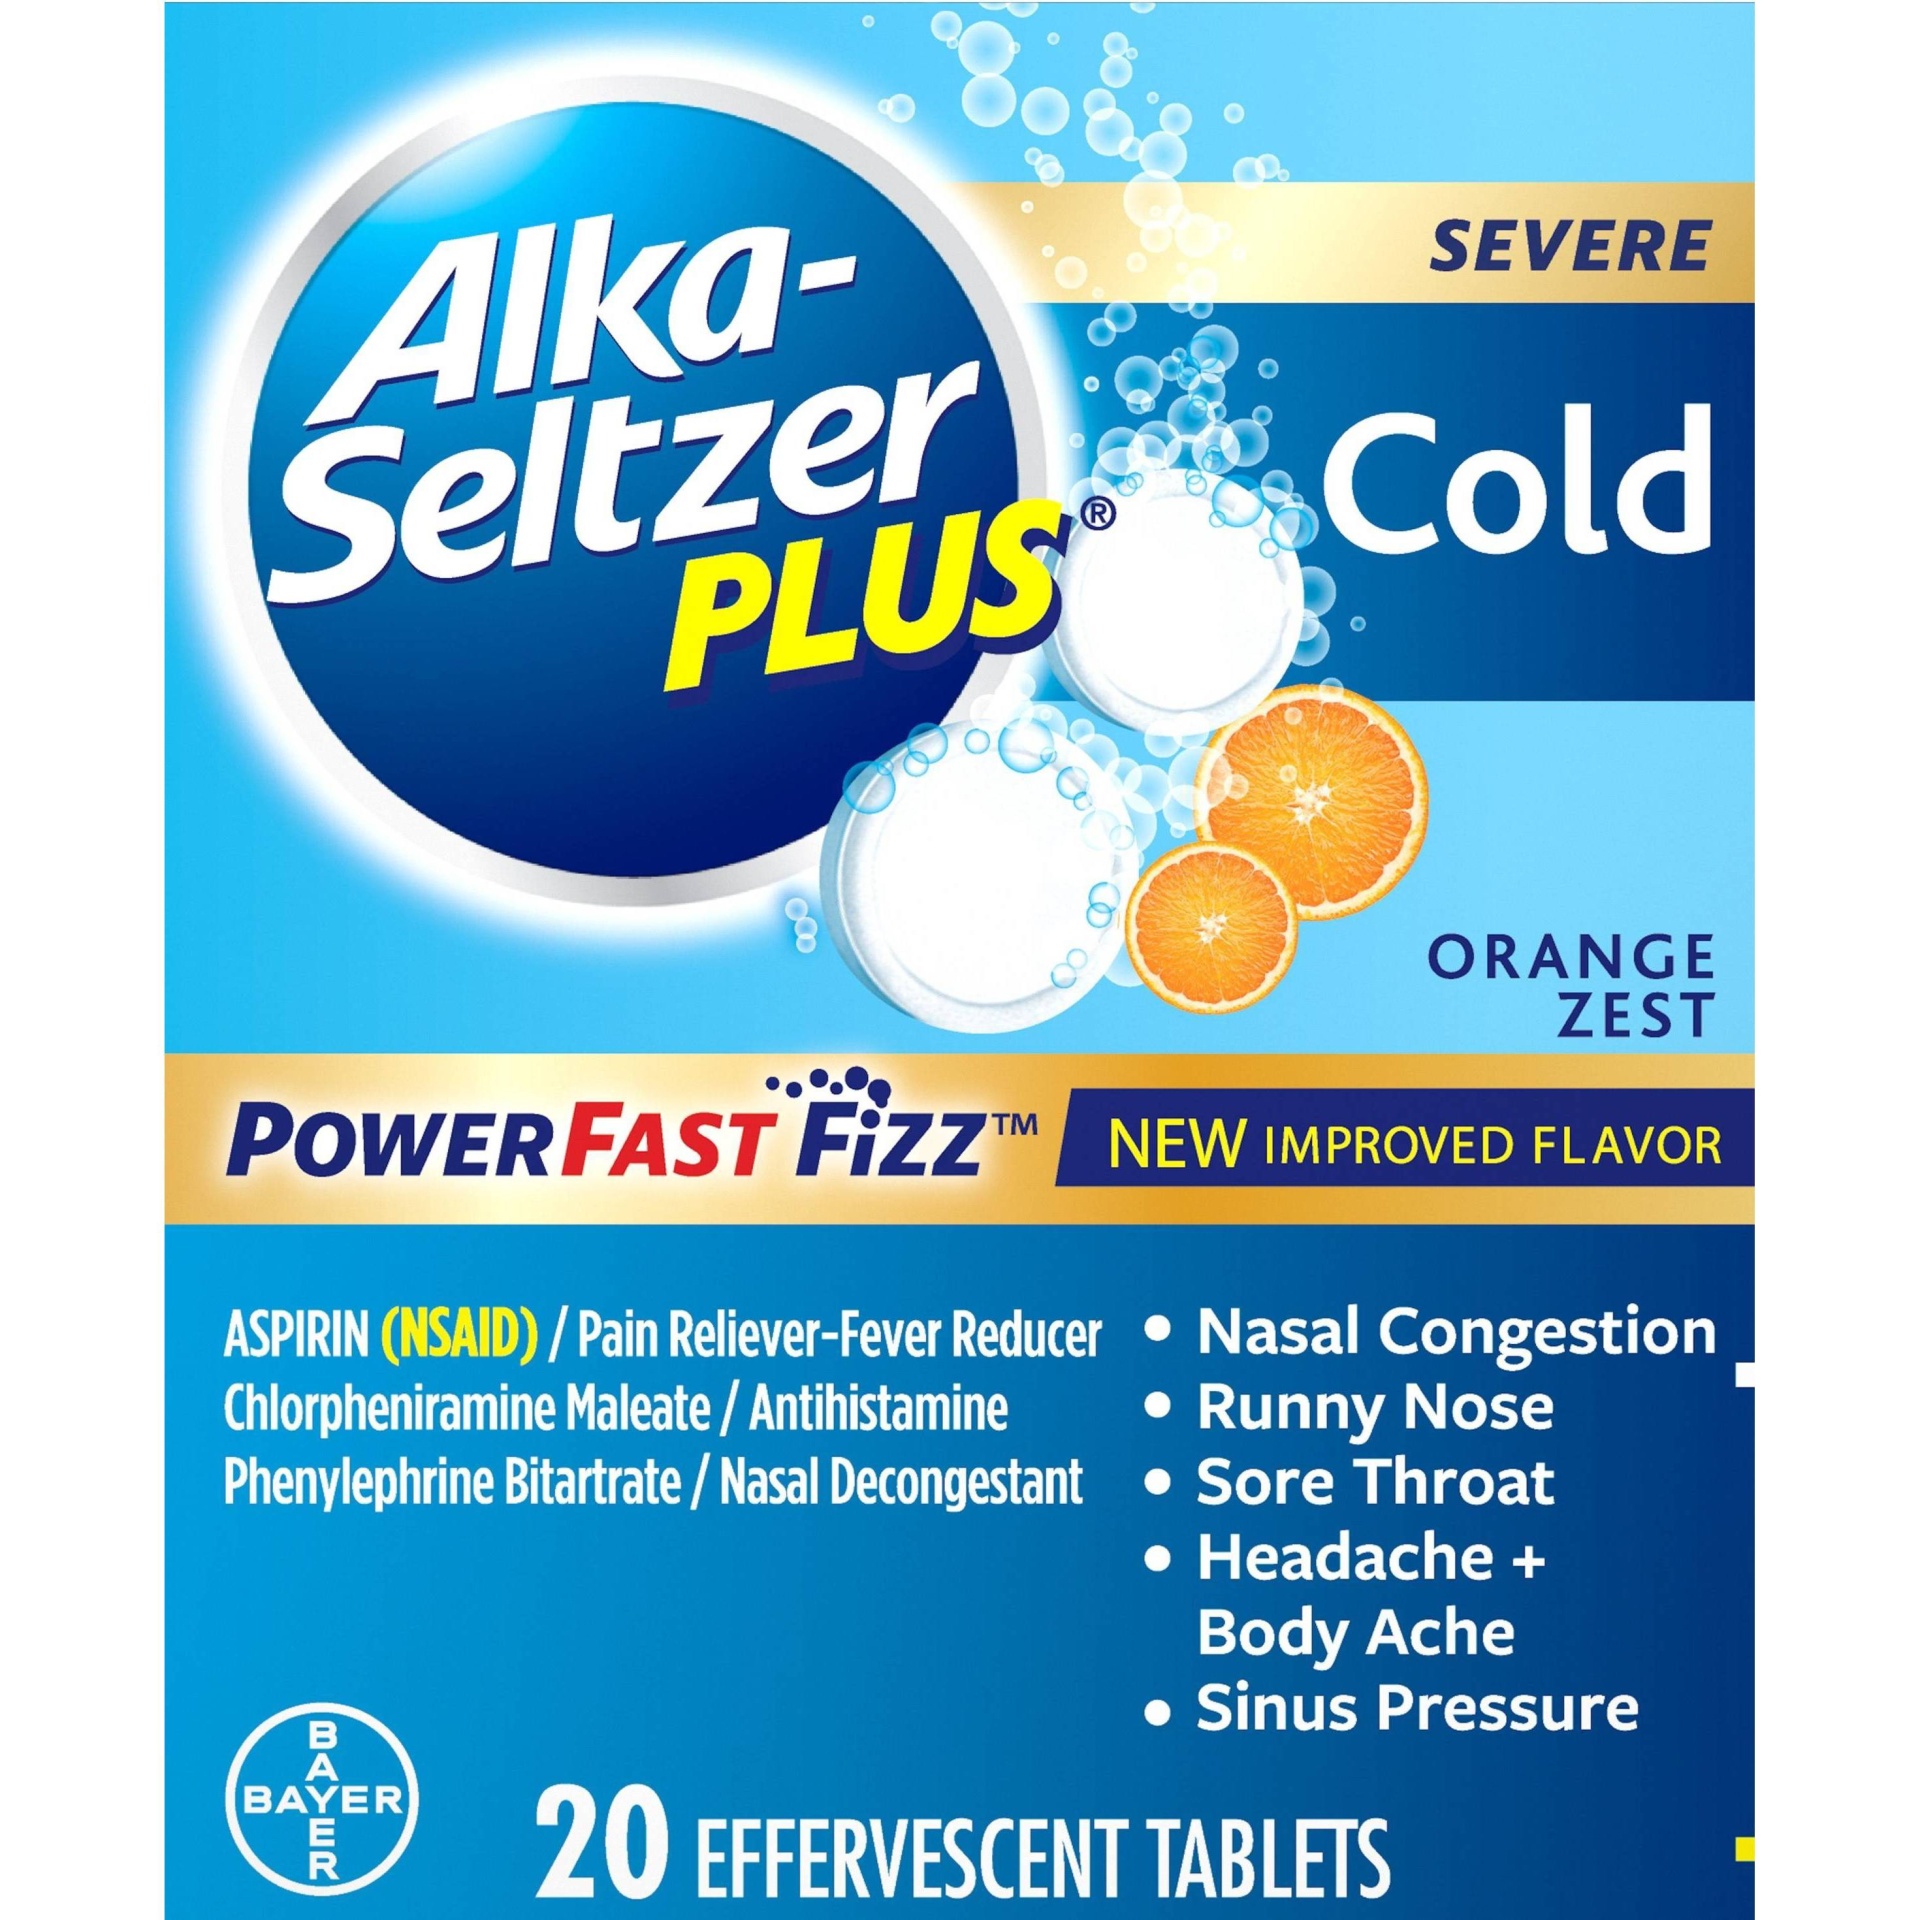 slide 1 of 5, Alka-Seltzer Plus Orange Zest Severe Cold Relief Tablets, 20 ct